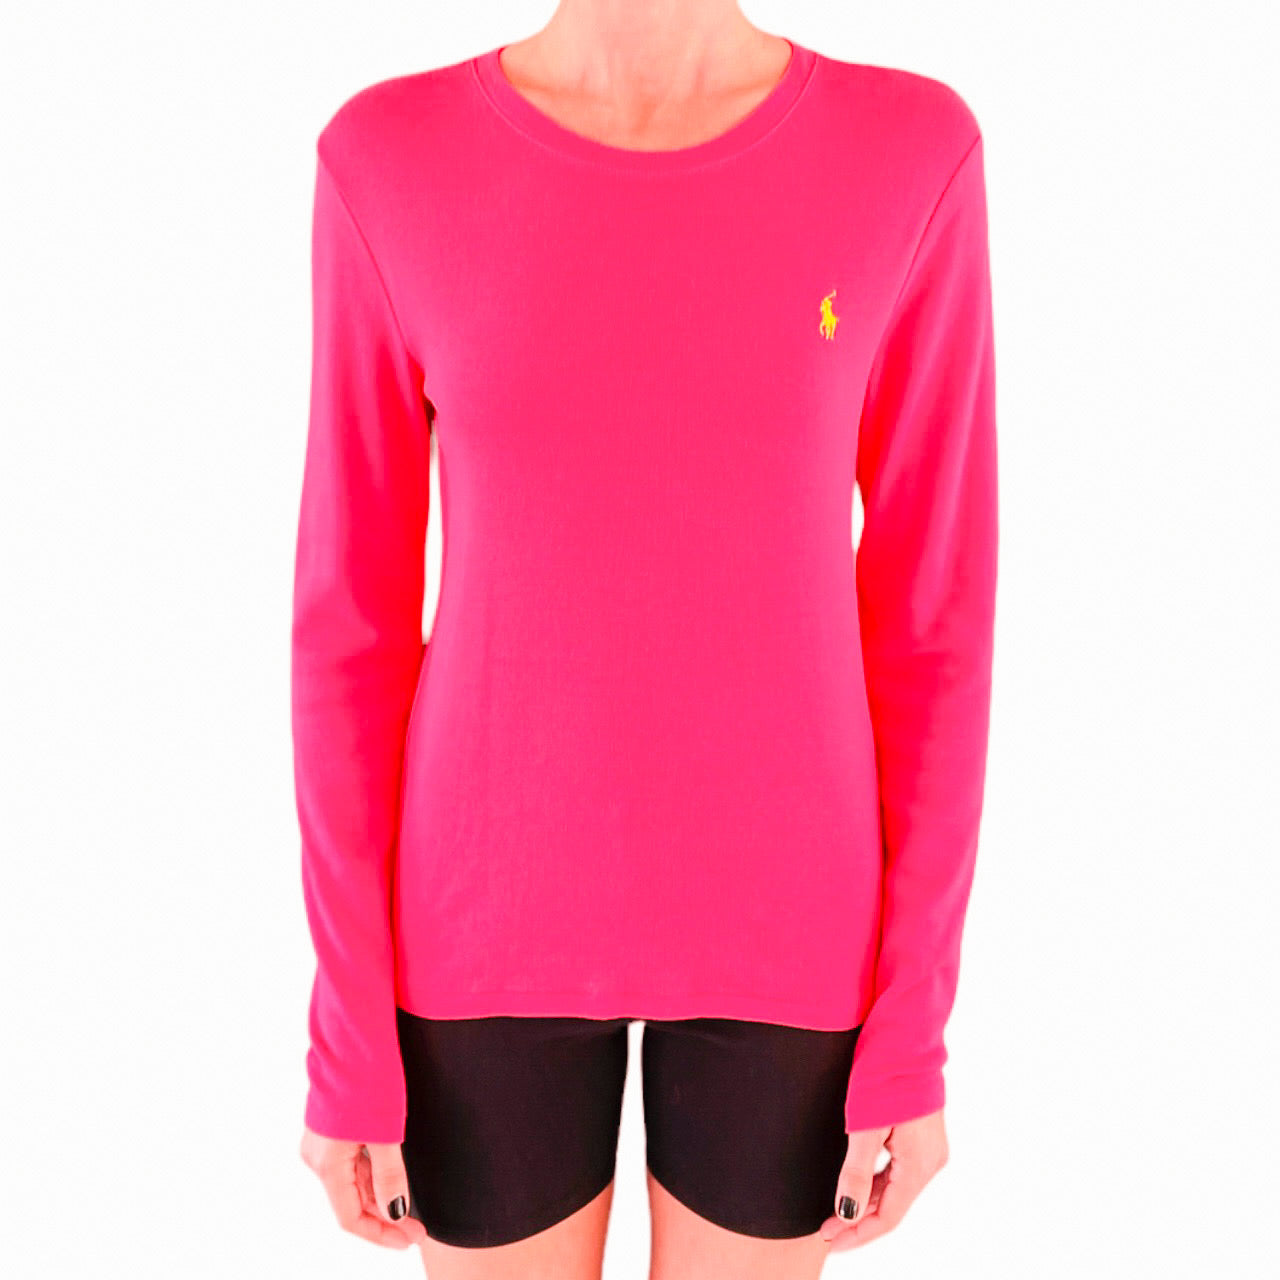 Ralph Lauren Pink Long Sleeve Top